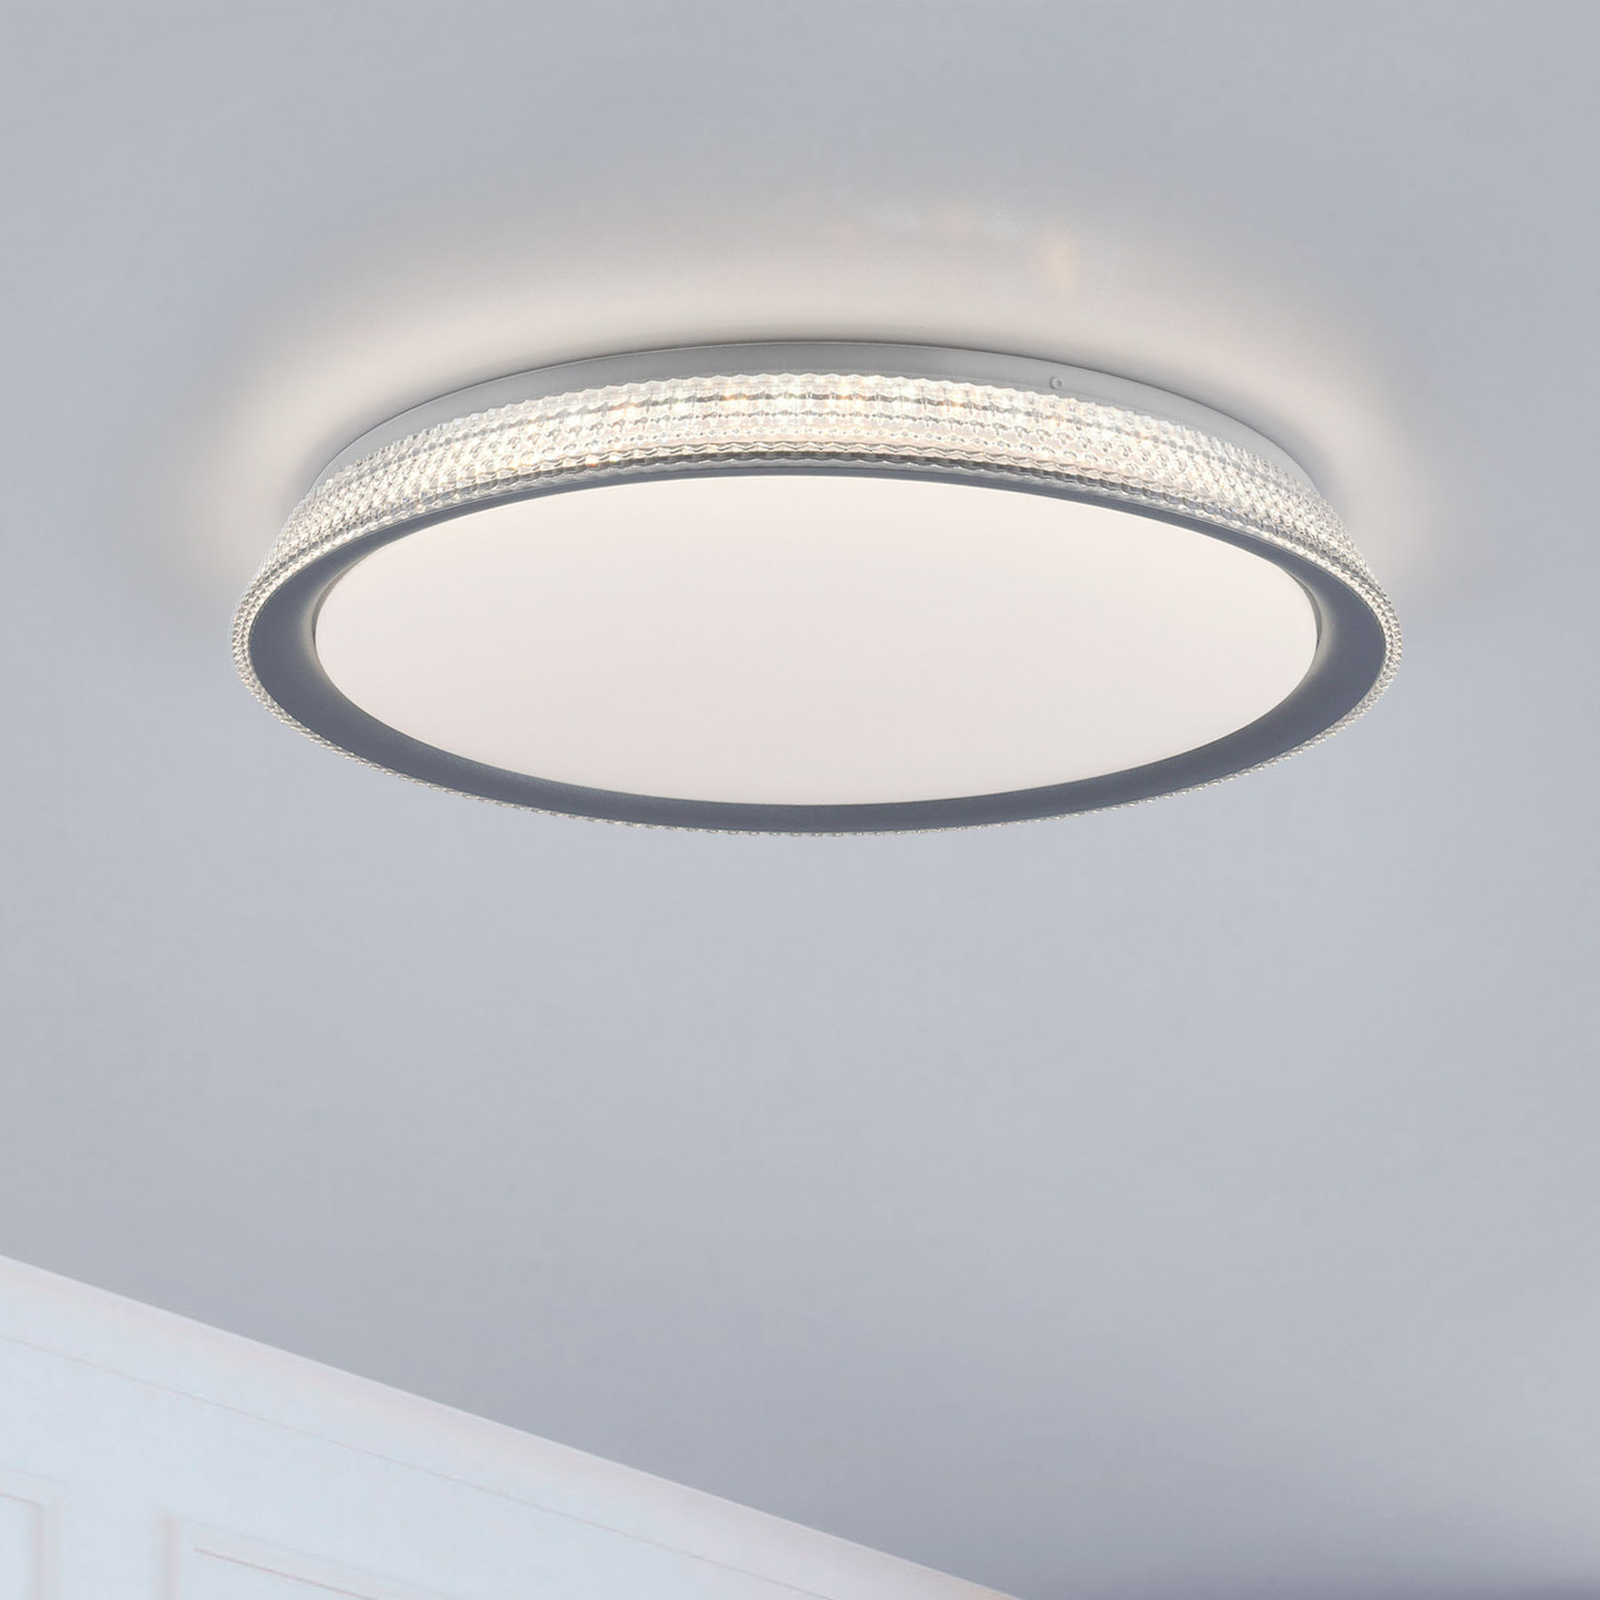 LED stropna svjetiljka Kari, Switchmo s mogućnošću prigušivanja, Ø 51 cm